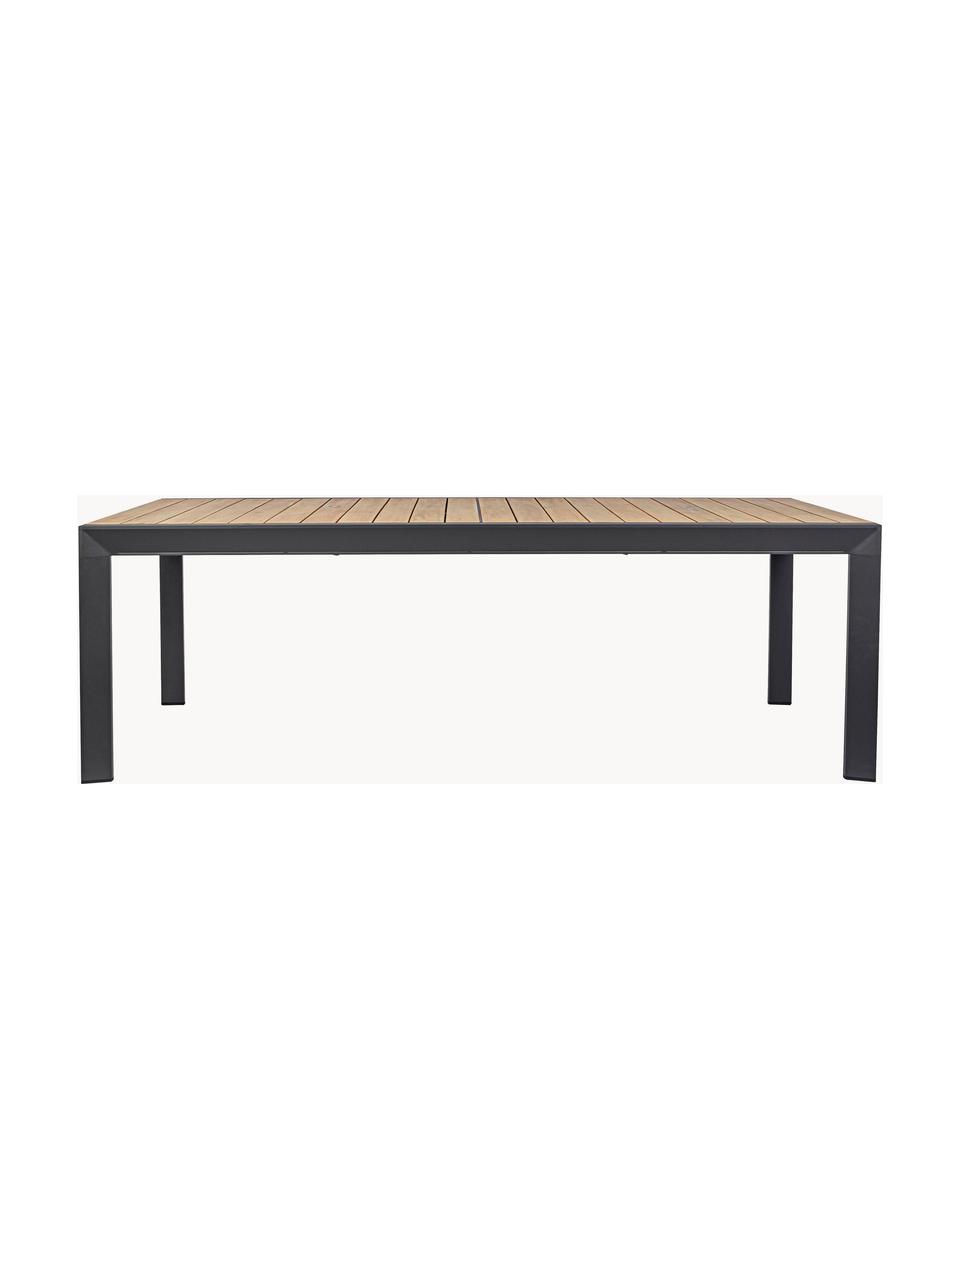 Rozkládací zahradní jídelní stůl Belmar, 220 - 340 x 100 cm, Hliník s práškovým nástřikem, Antracitová, vzhled dřeva, Š 220/340 cm, H 100 cm